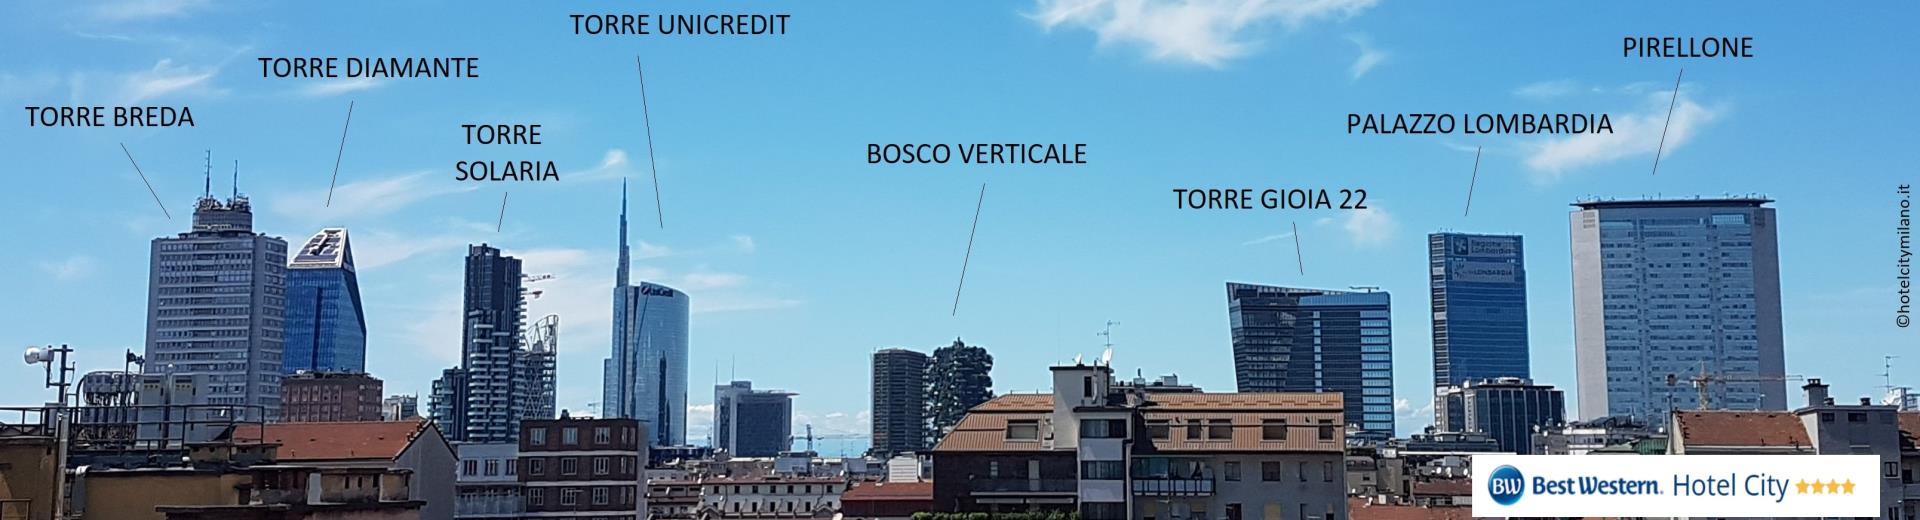 Soggiorna al Best Western Hotel City e divertiti a riconoscere i più avveniristici grattacieli di Milano Porta Nuova dalla terrazza panoramica all''''ottavo piano.